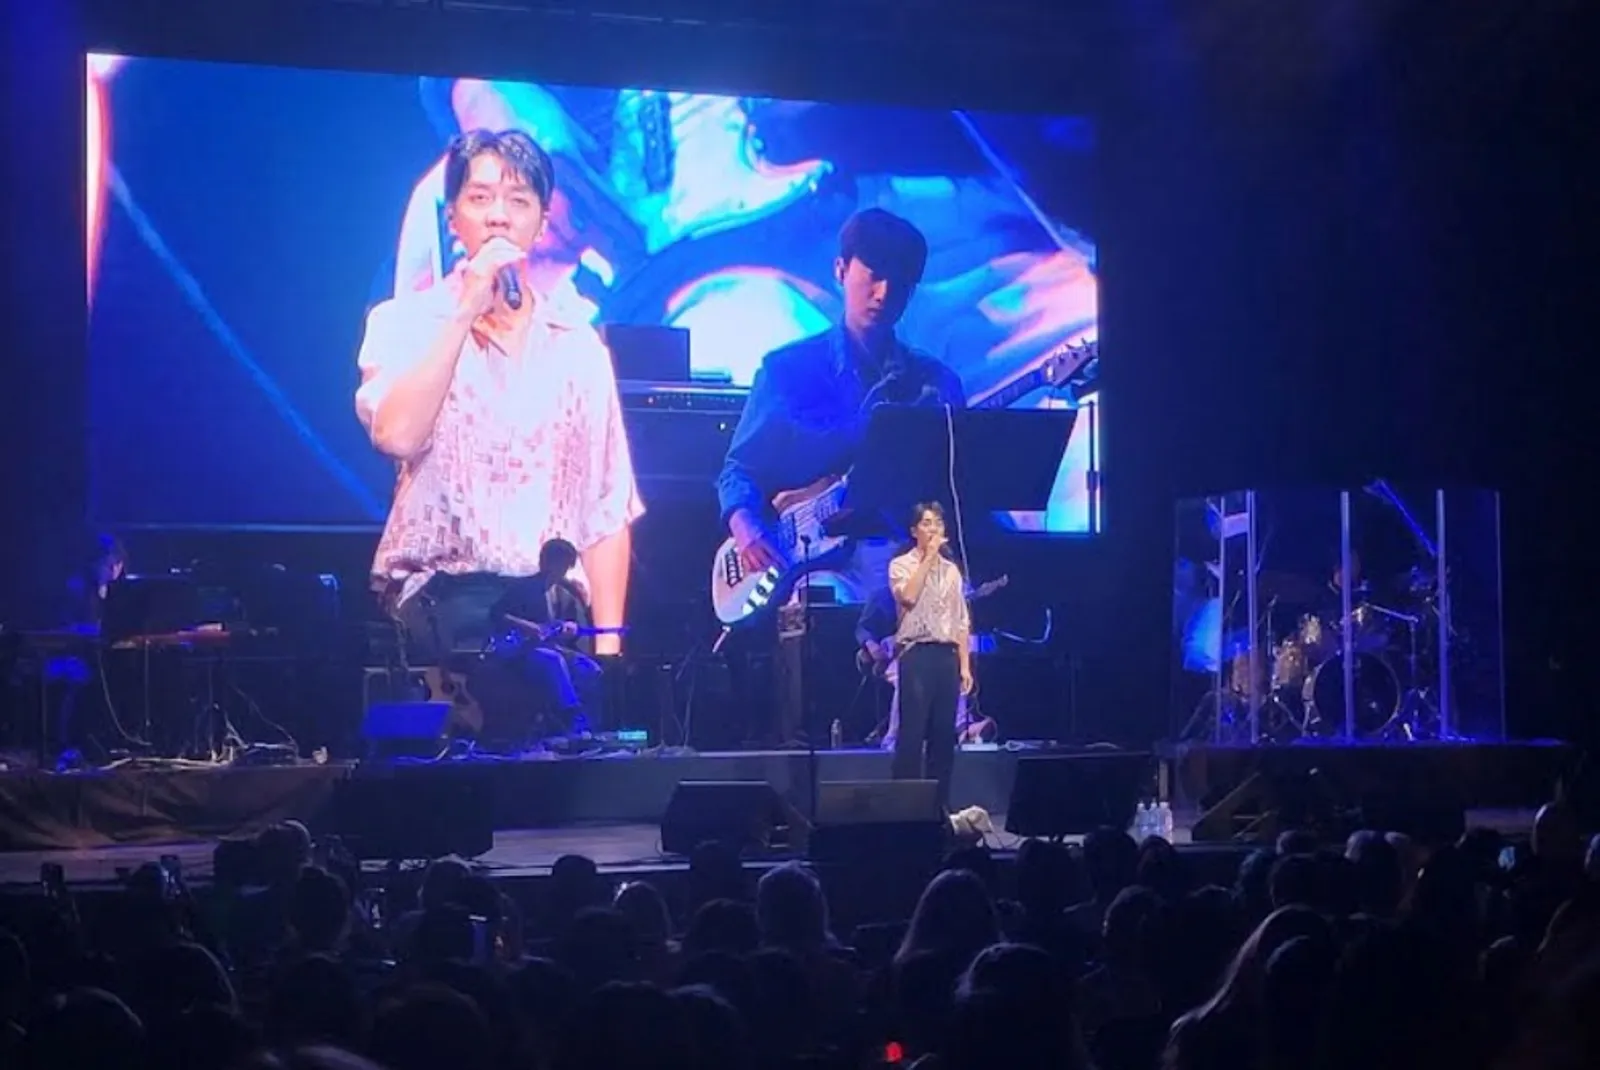 Citra Memburuk, Lee Seung Gi Panen Kontroversi saat Konser di Amerika